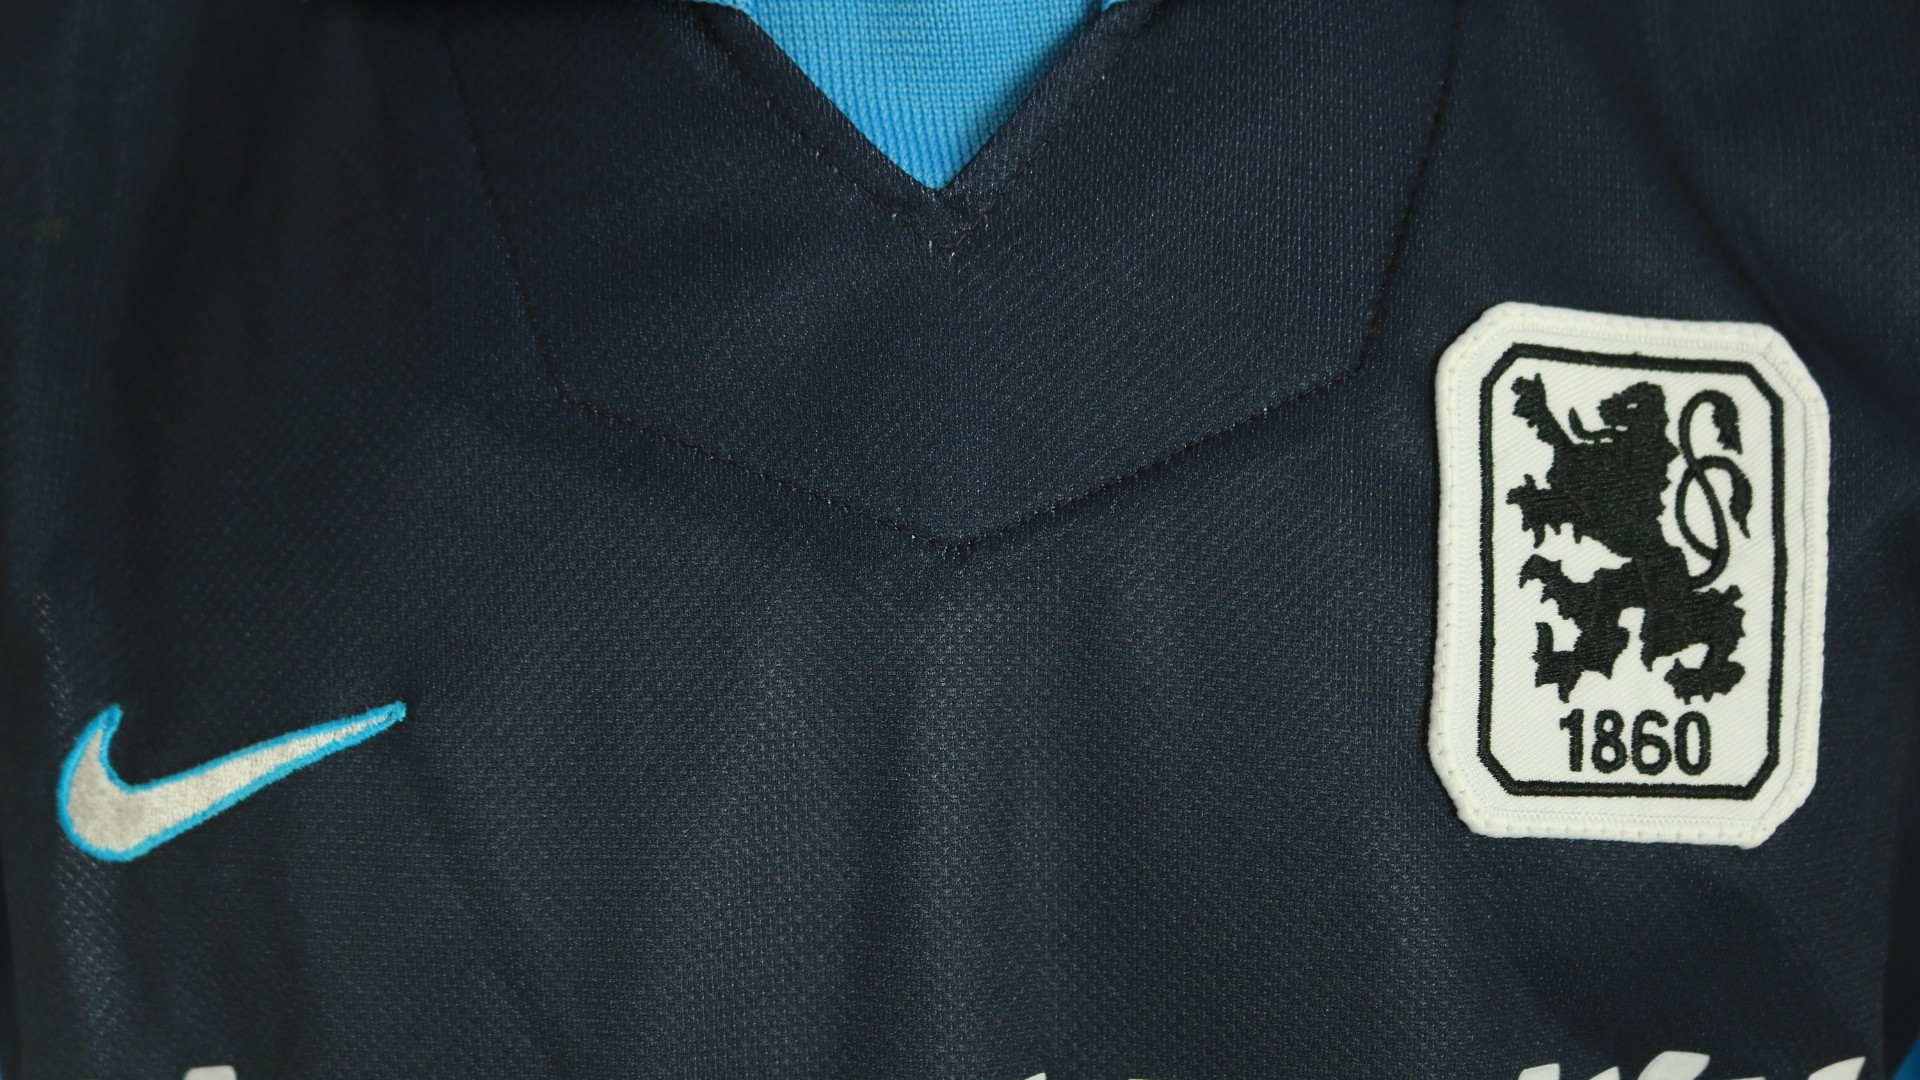 1860 Munich Official Shirt, 1997/98 - CharityStars